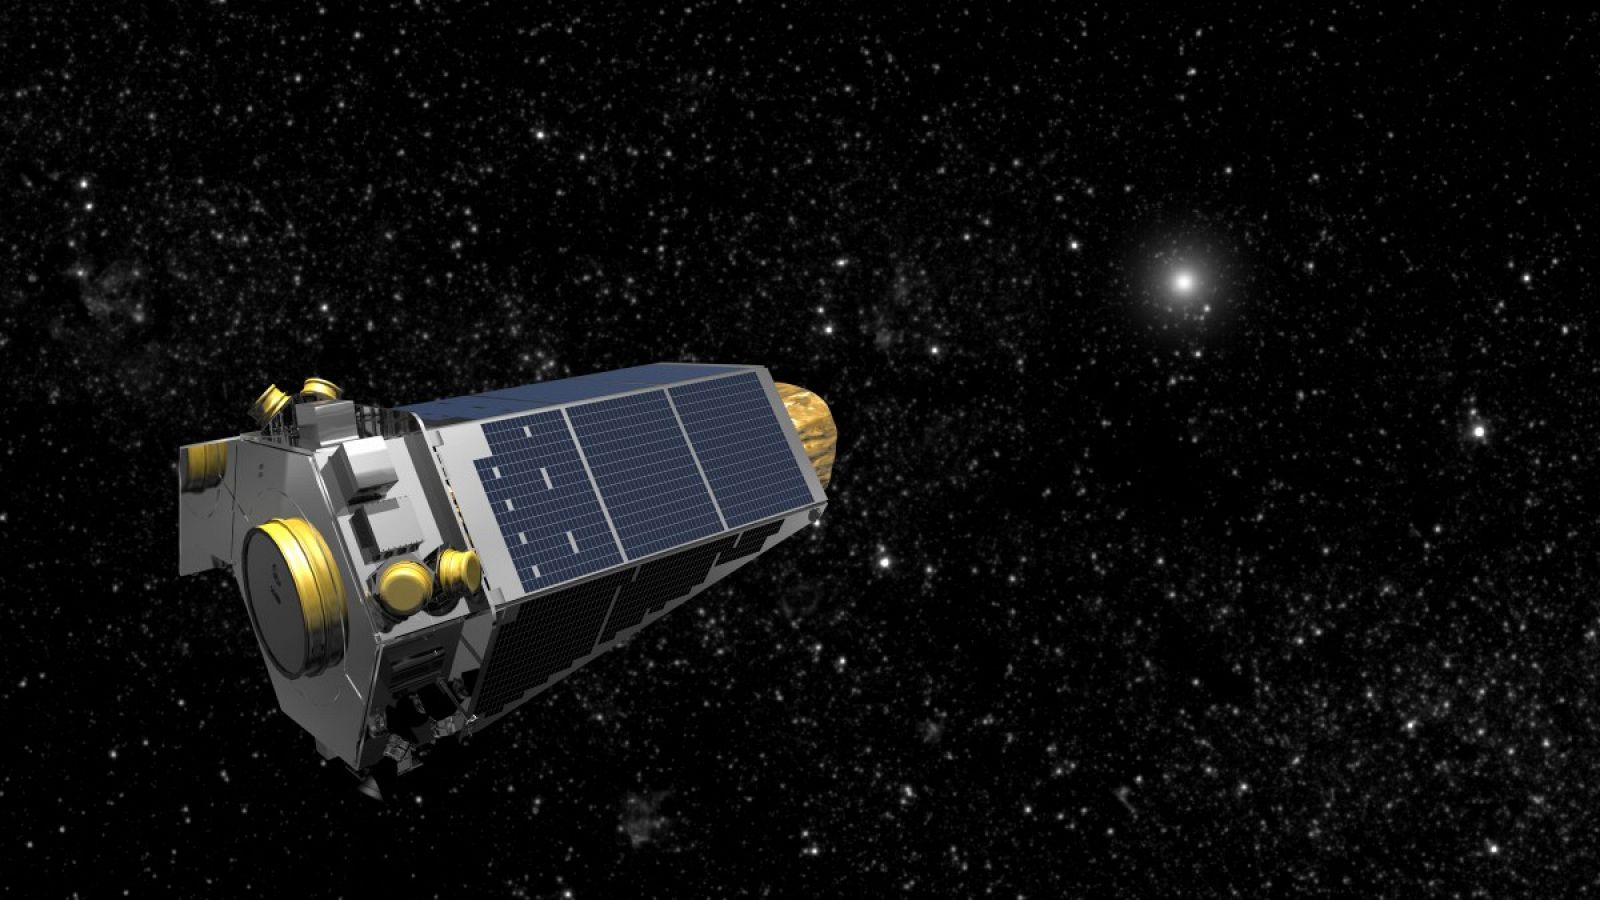 Kepler y su misión K2 descubren nuevos planetas mediante la medición de la disminución sutil en el brillo de una estrella causada por un planeta que pasa por delante.